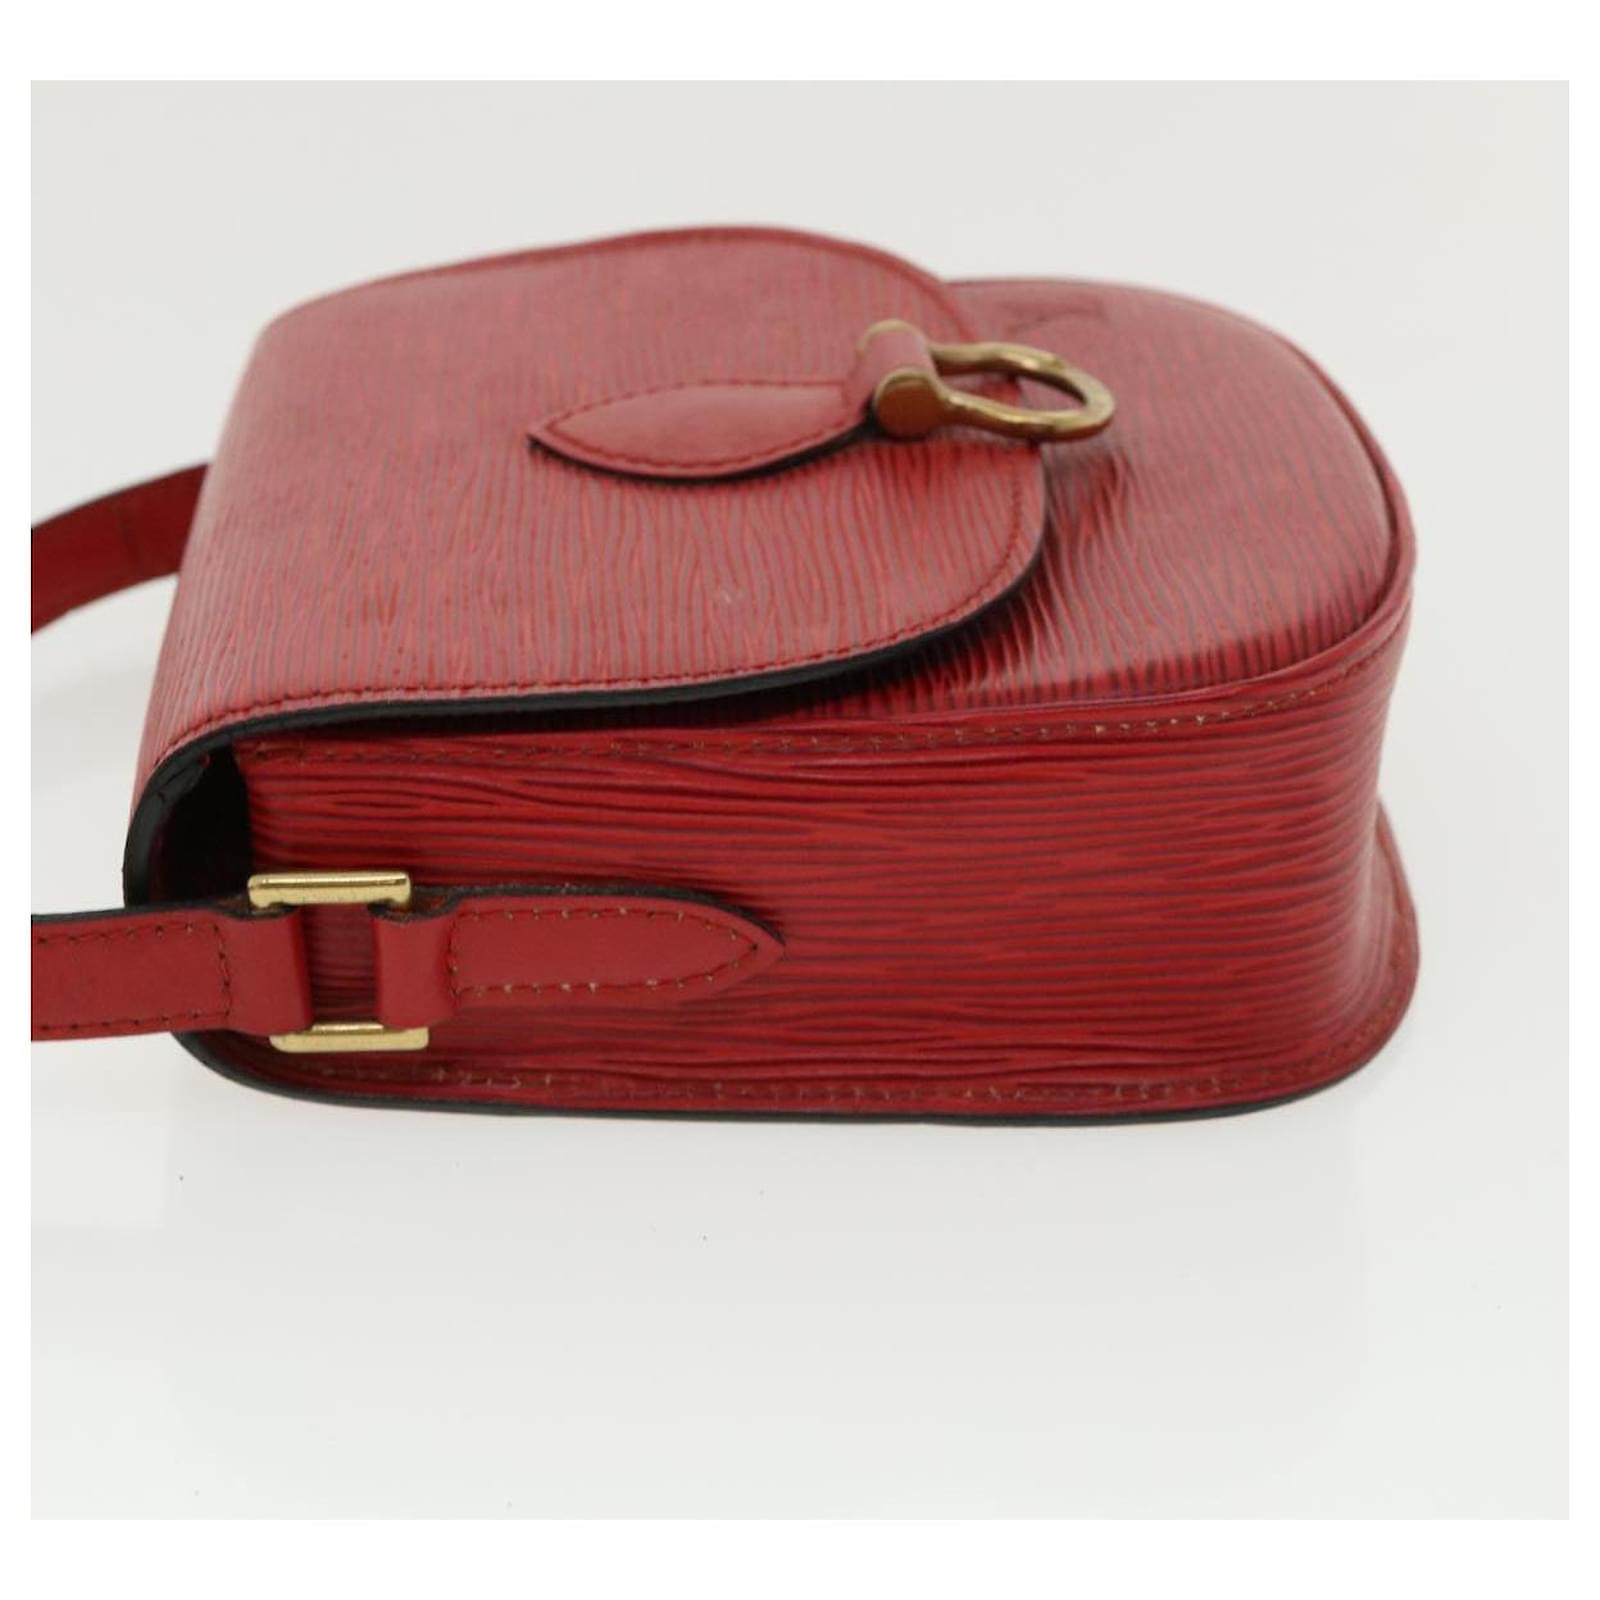 Auth Louis Vuitton Epi Mini Saint-Cloud M52217 Women's Shoulder Bag Red